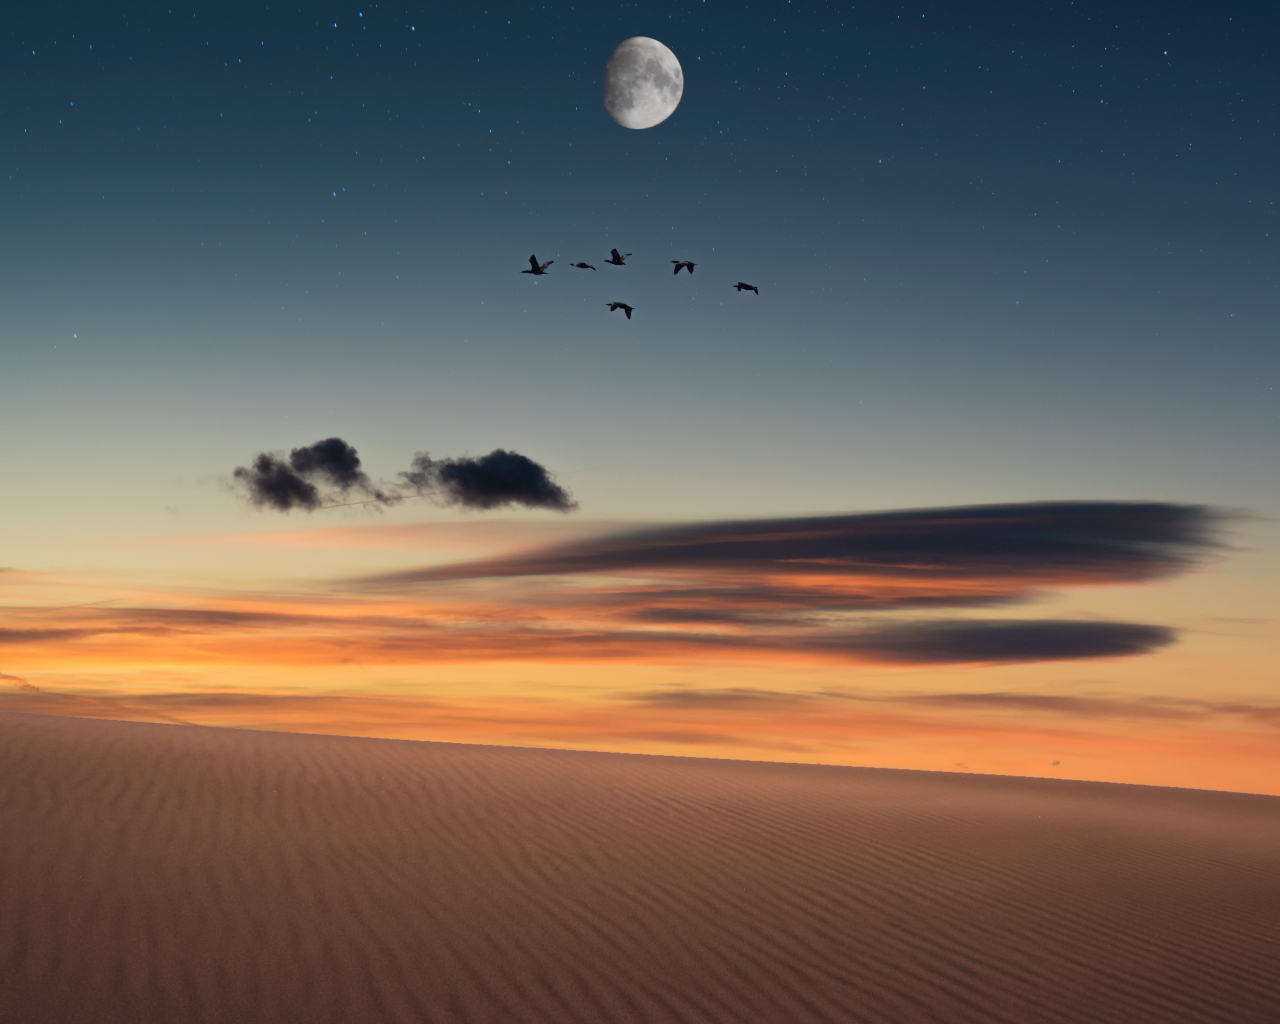 Full moon, birds, landscape, desert, 1280x1024 wallpaper